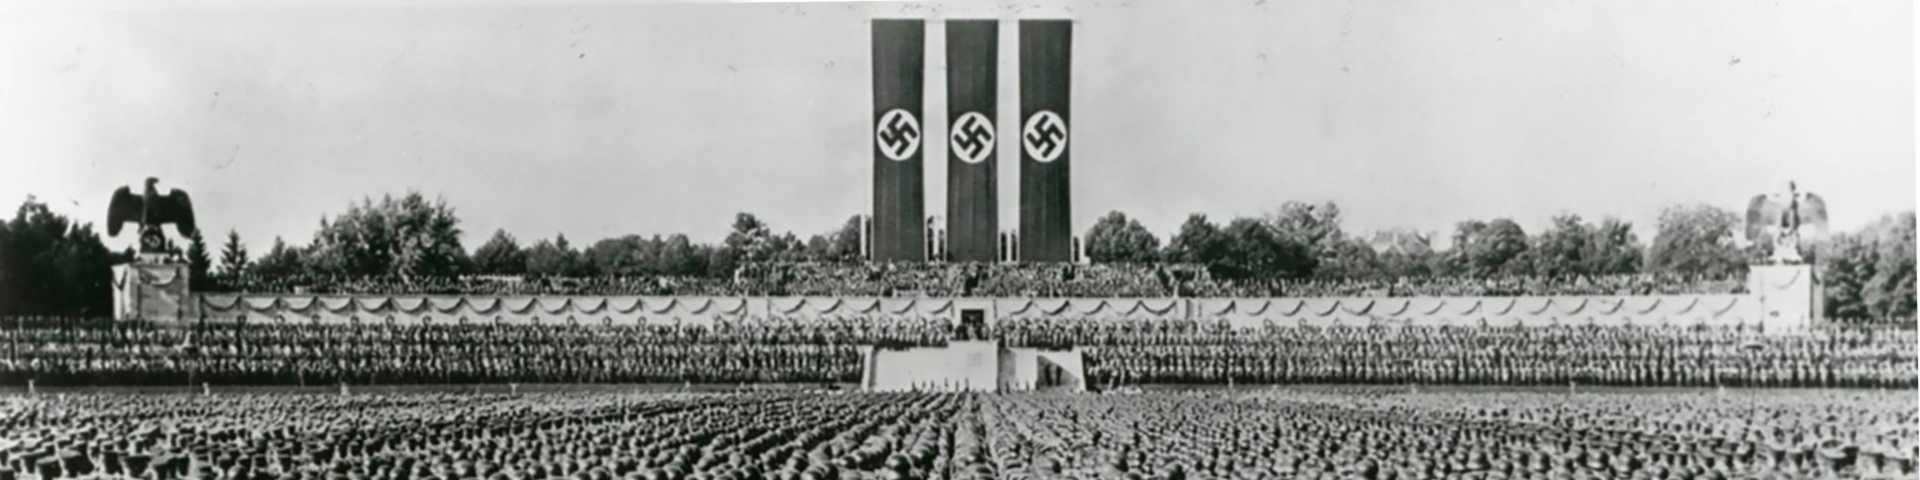 90 година од доласка Хитлера на власт: Најгори политички избор у историји